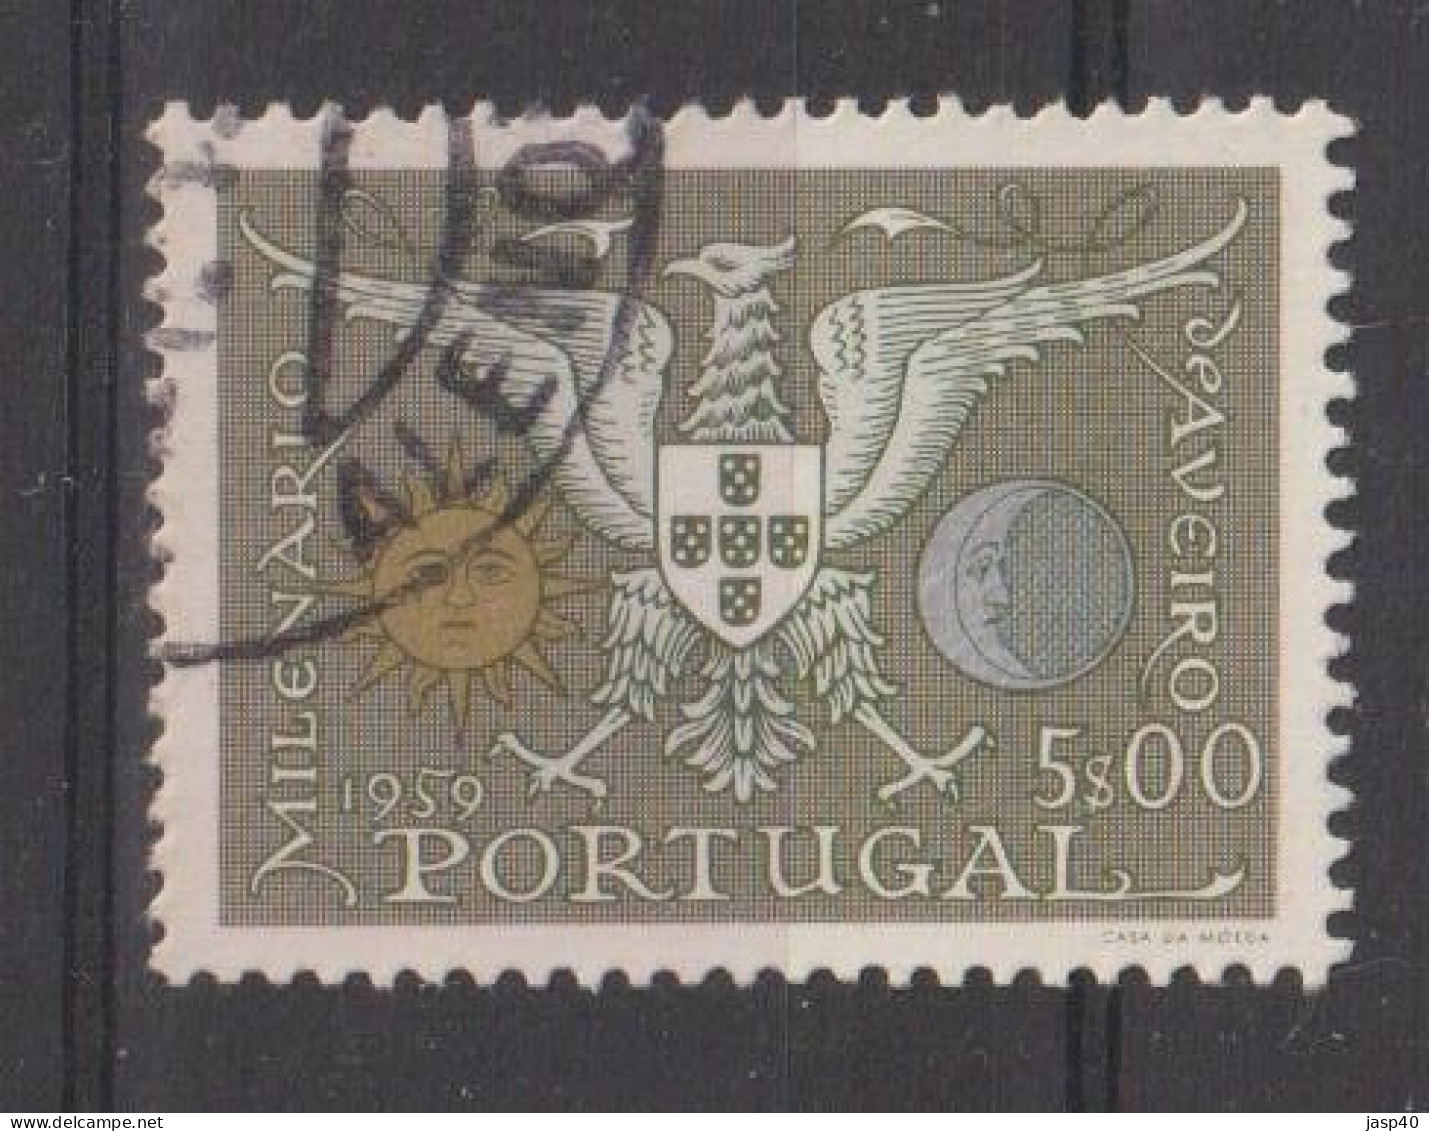 PORTUGAL 848 - POSTMARKS OF PORTUGAL - ALENQUER - Usado